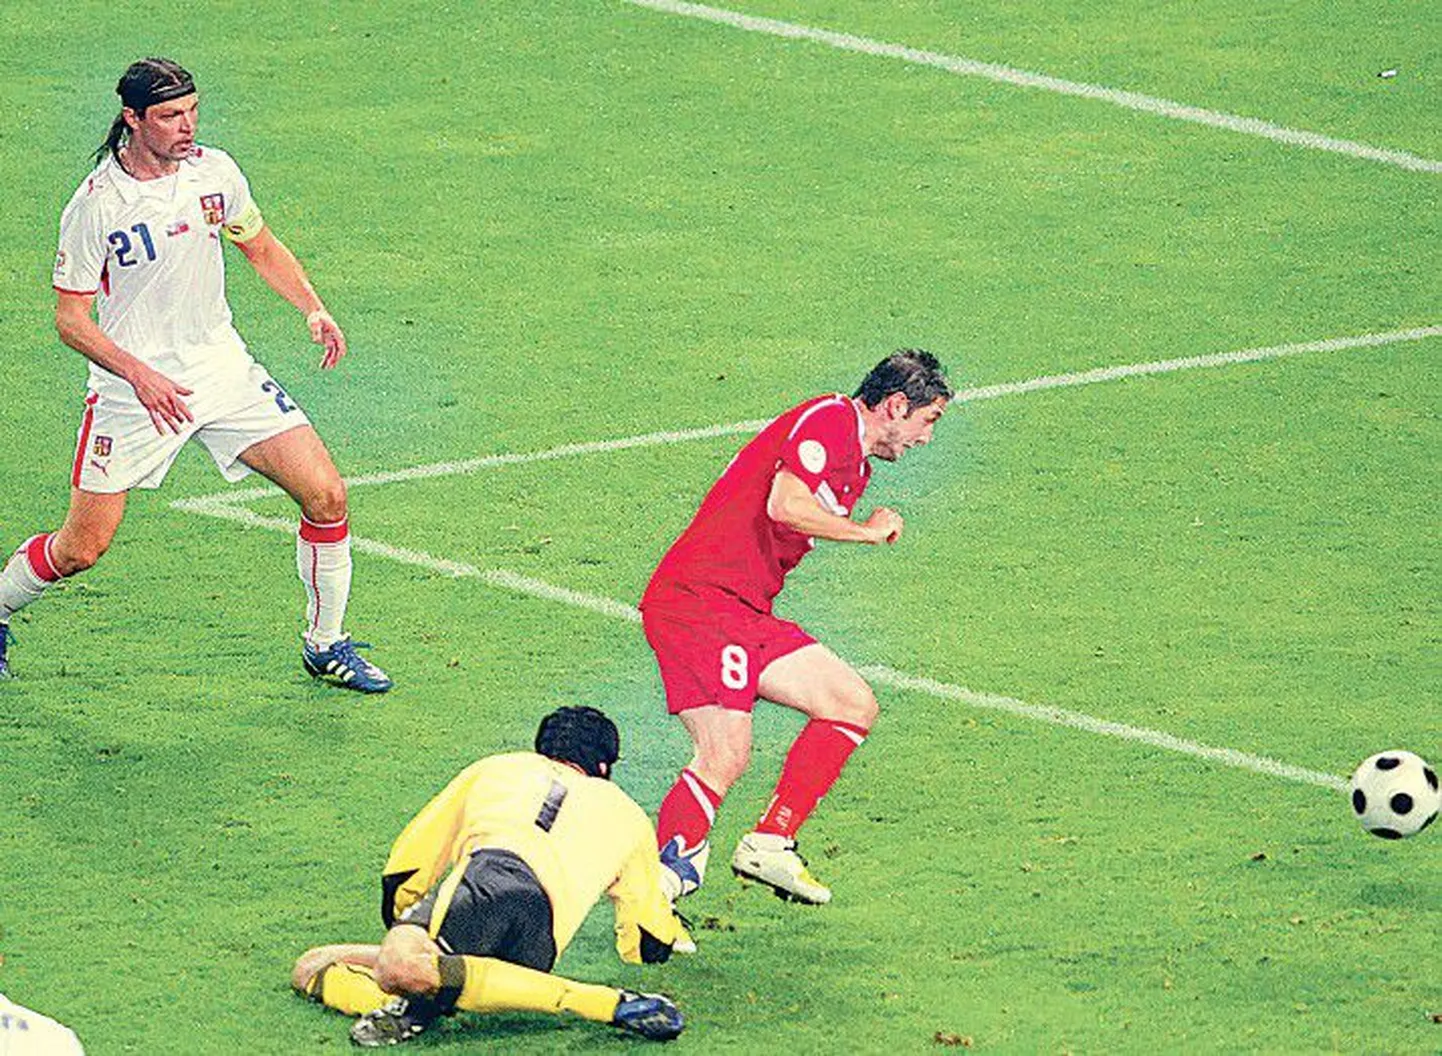 Tšehhide kogenud väravavaht Petr Cech (kollases) pillas tsenderduse Nihat Kahveci (punases) jalale, kes lükkas palli tühja väravasse ning viigistas seisu.